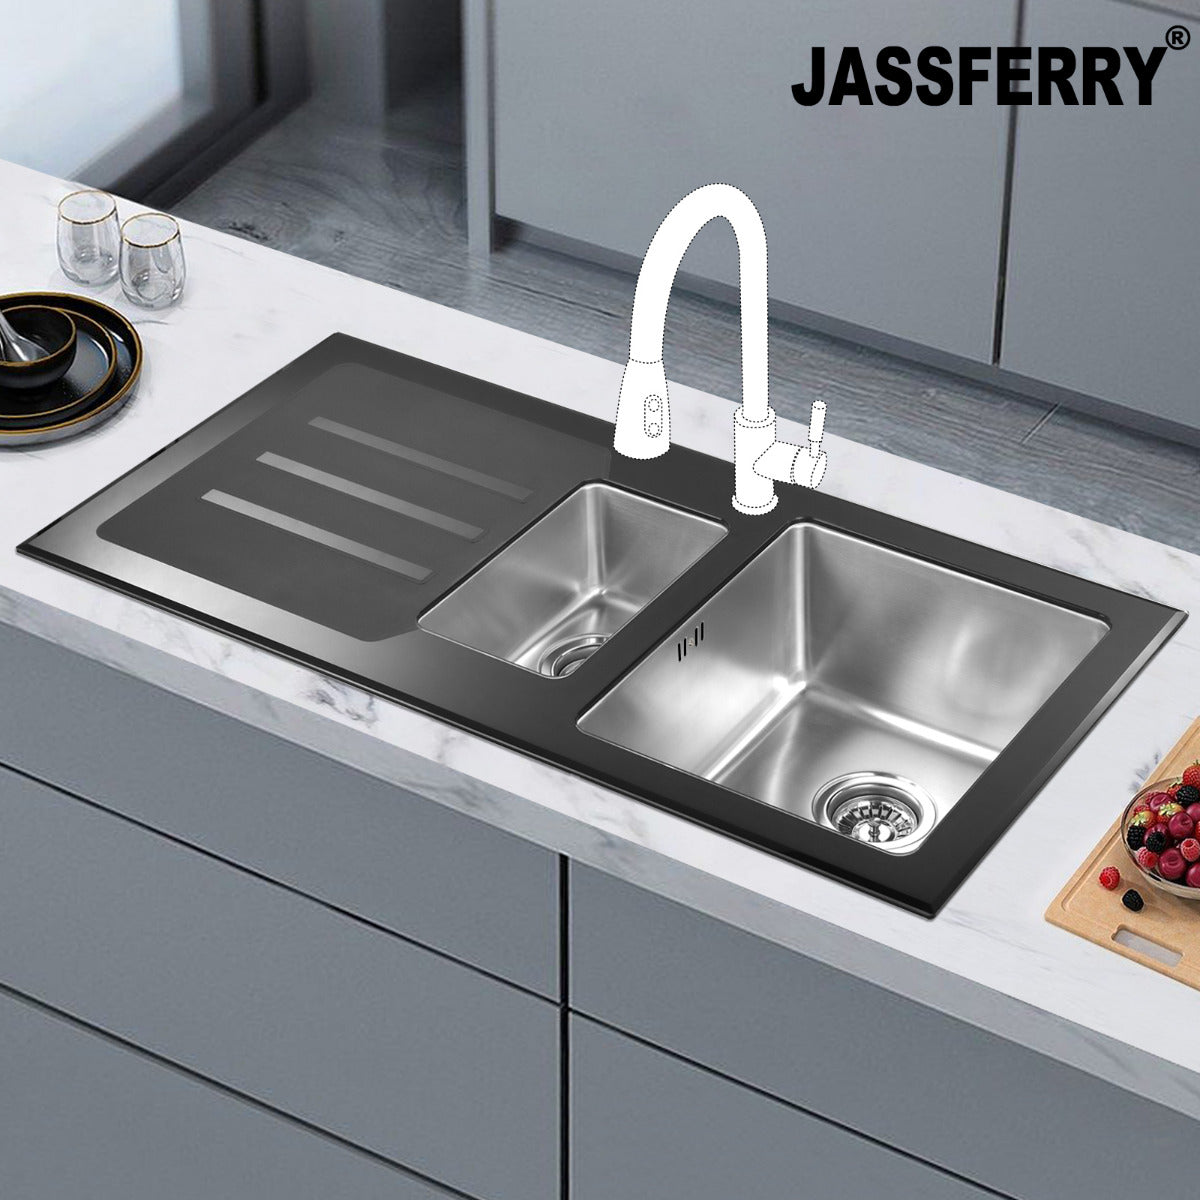 JassferryJASSFERRY Kitchen Sink Stainless Steel 1.5 Bowl Black Glass Lefthand DrainerKitchen Sinks